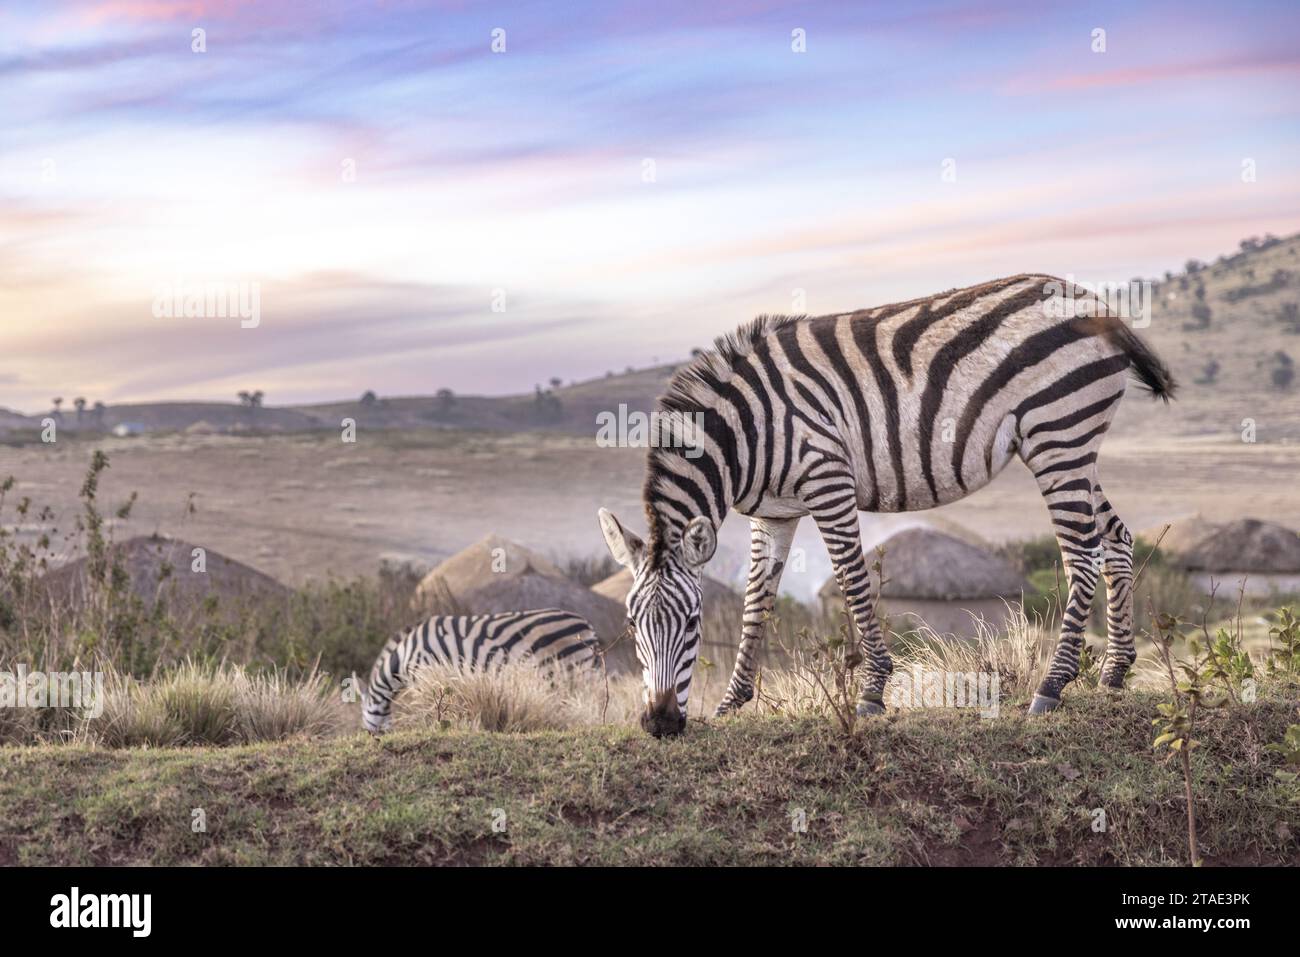 Tansania, Region Arusha, Malanja, eine Zebras-Herde vor dem Dorf am Ende des Tages, die die Nähe des wilden Lebens und der menschlichen Präsenz veranschaulicht Stockfoto